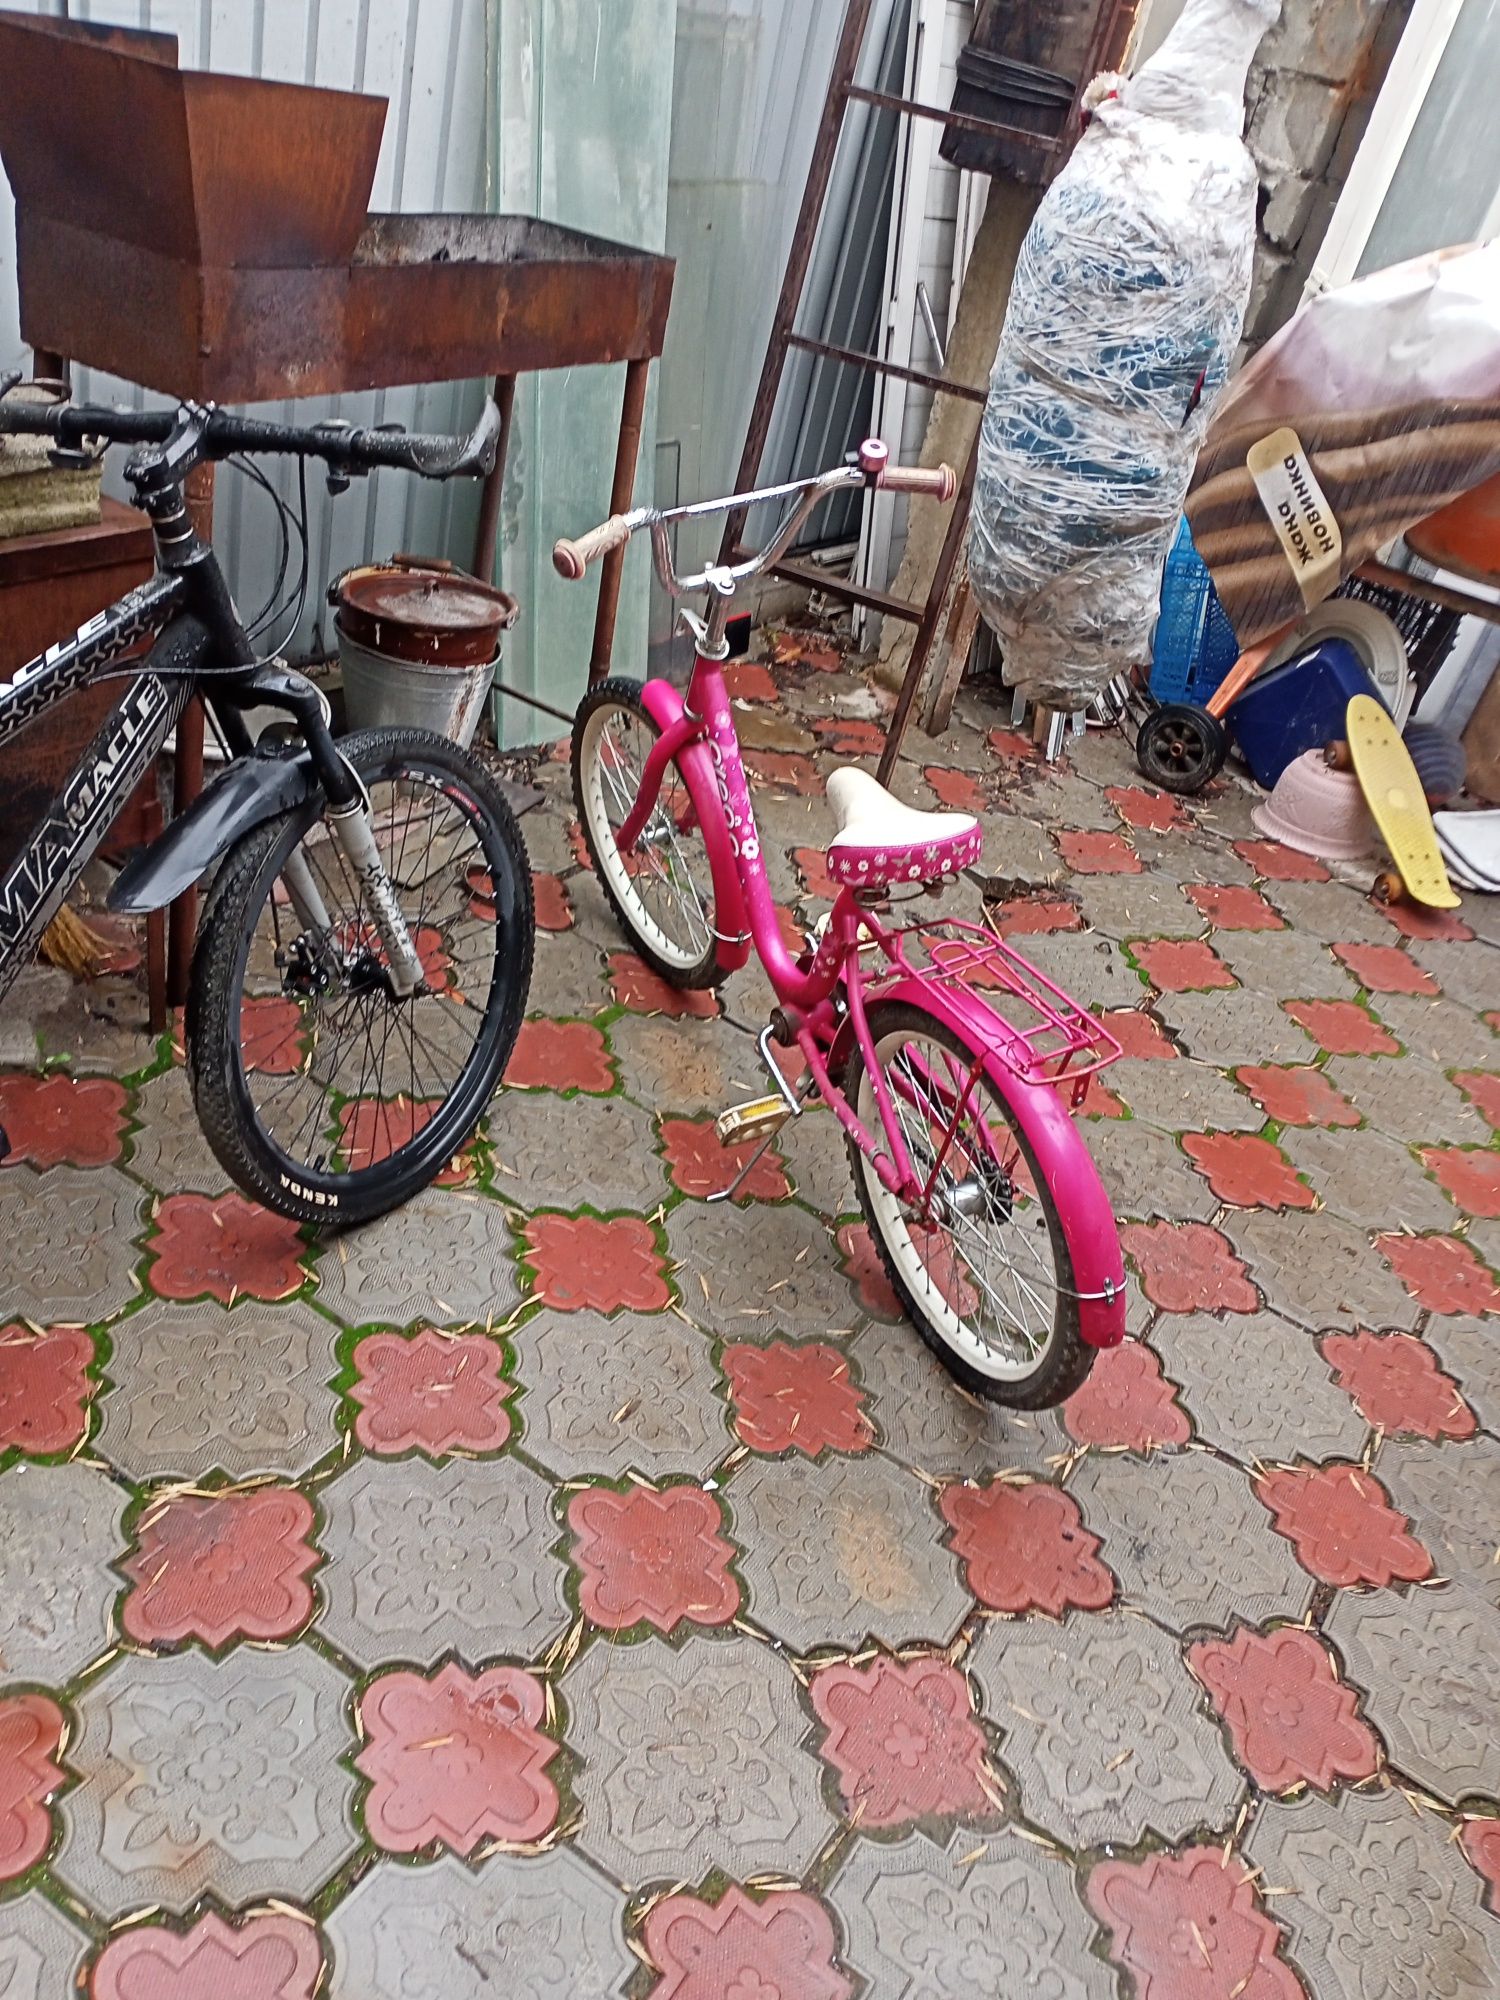 Продам детский велосипед.